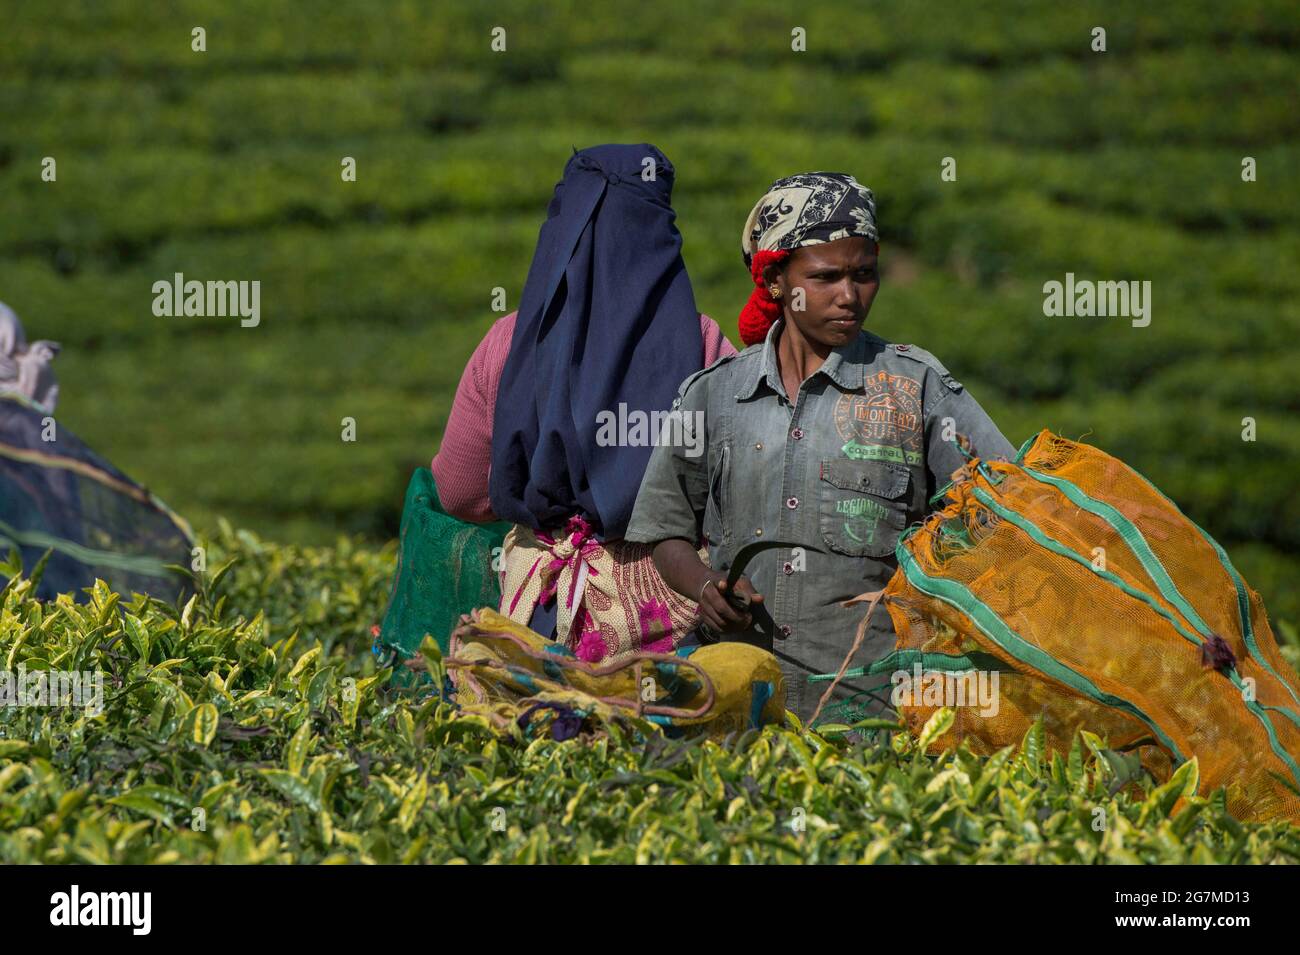 Die Teeplantagen um Ootacamund (Ooty)/ Udagamandalam im indischen Südstaat Tamil Nadu bilden vor dem Hintergrund von t faszinierende Muster Stockfoto